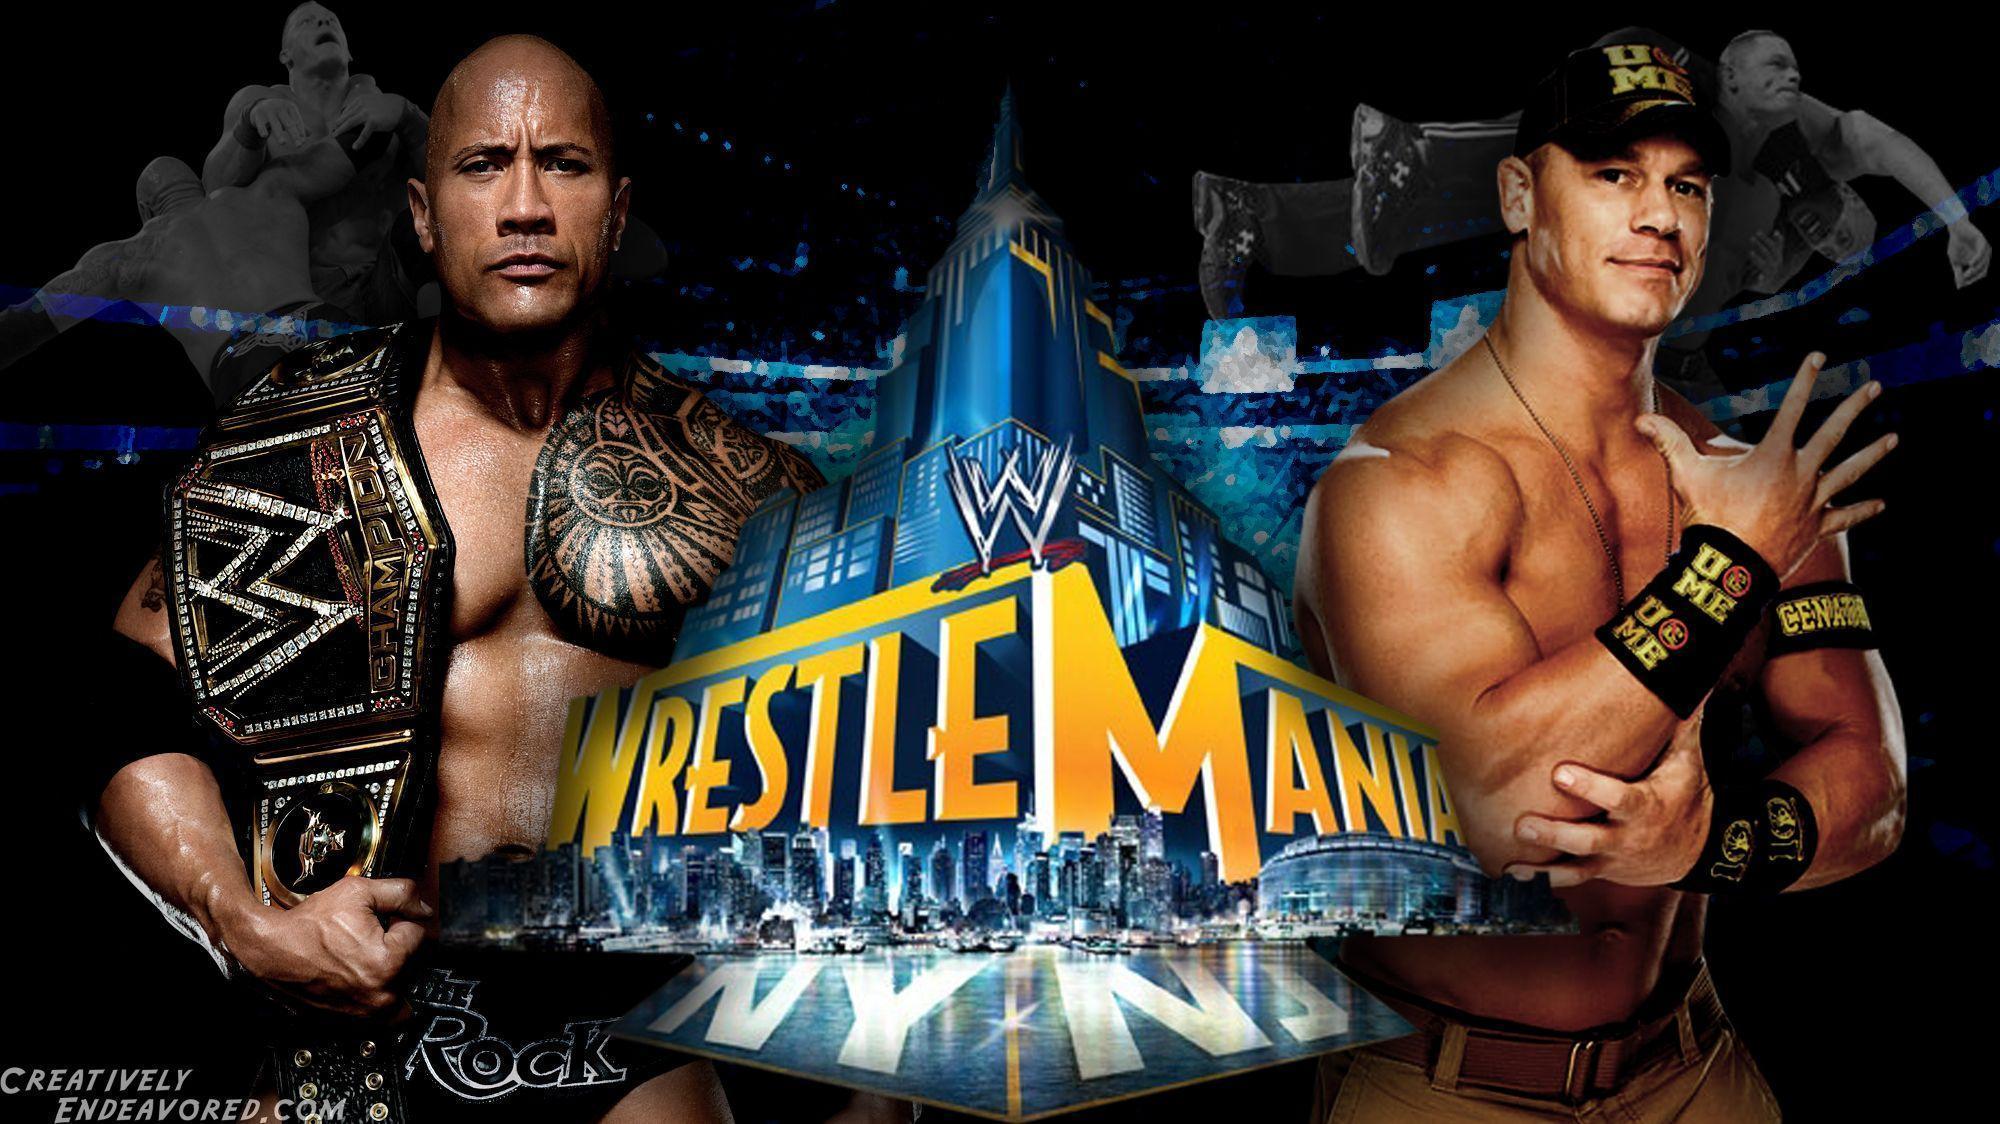 WrestleMania Wallpaper Wednesday: The Rock vs John Cena for the WWE